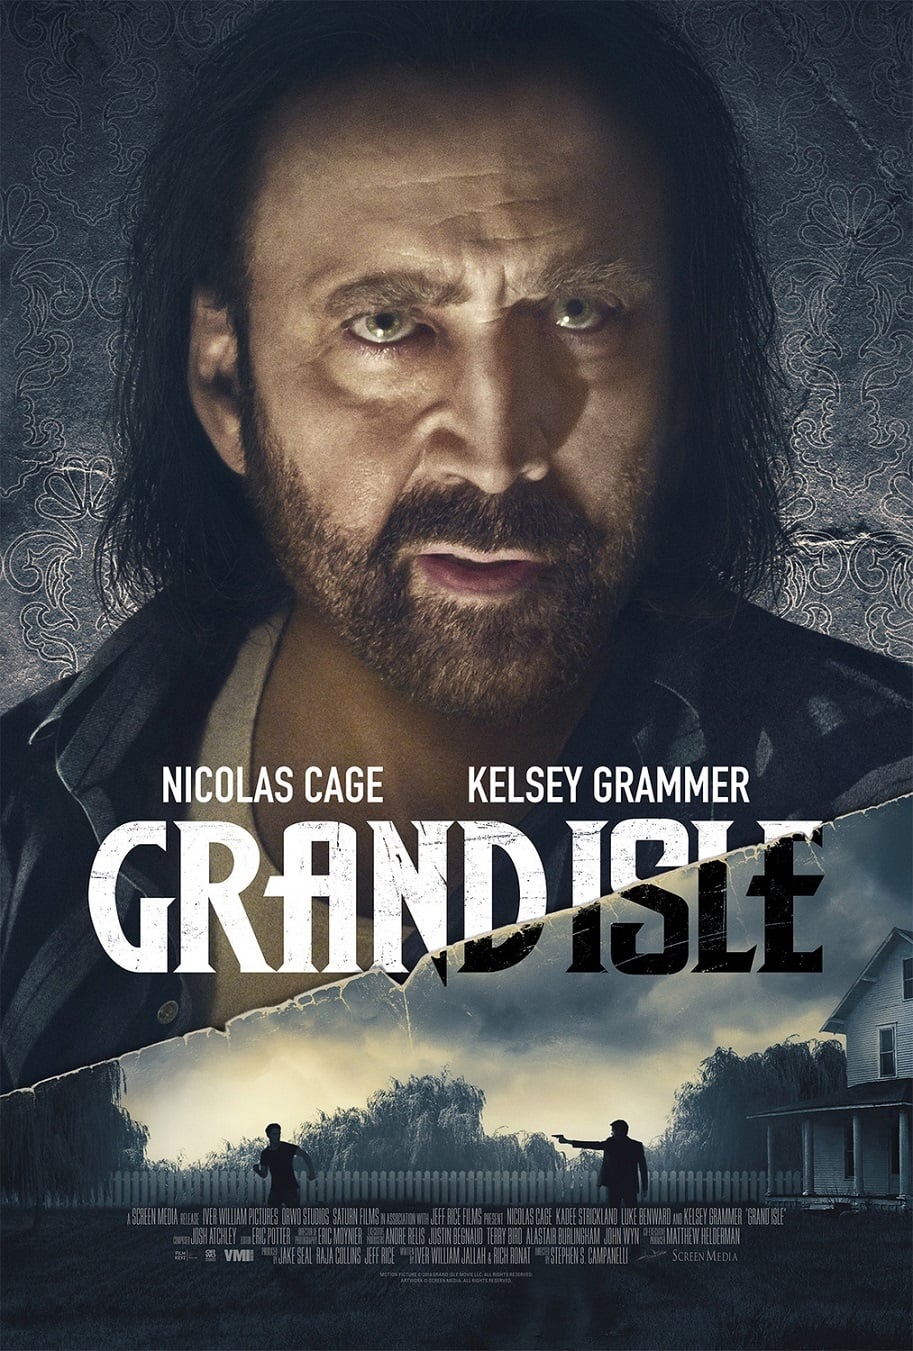 دانلود فیلم Grand Isle 2019